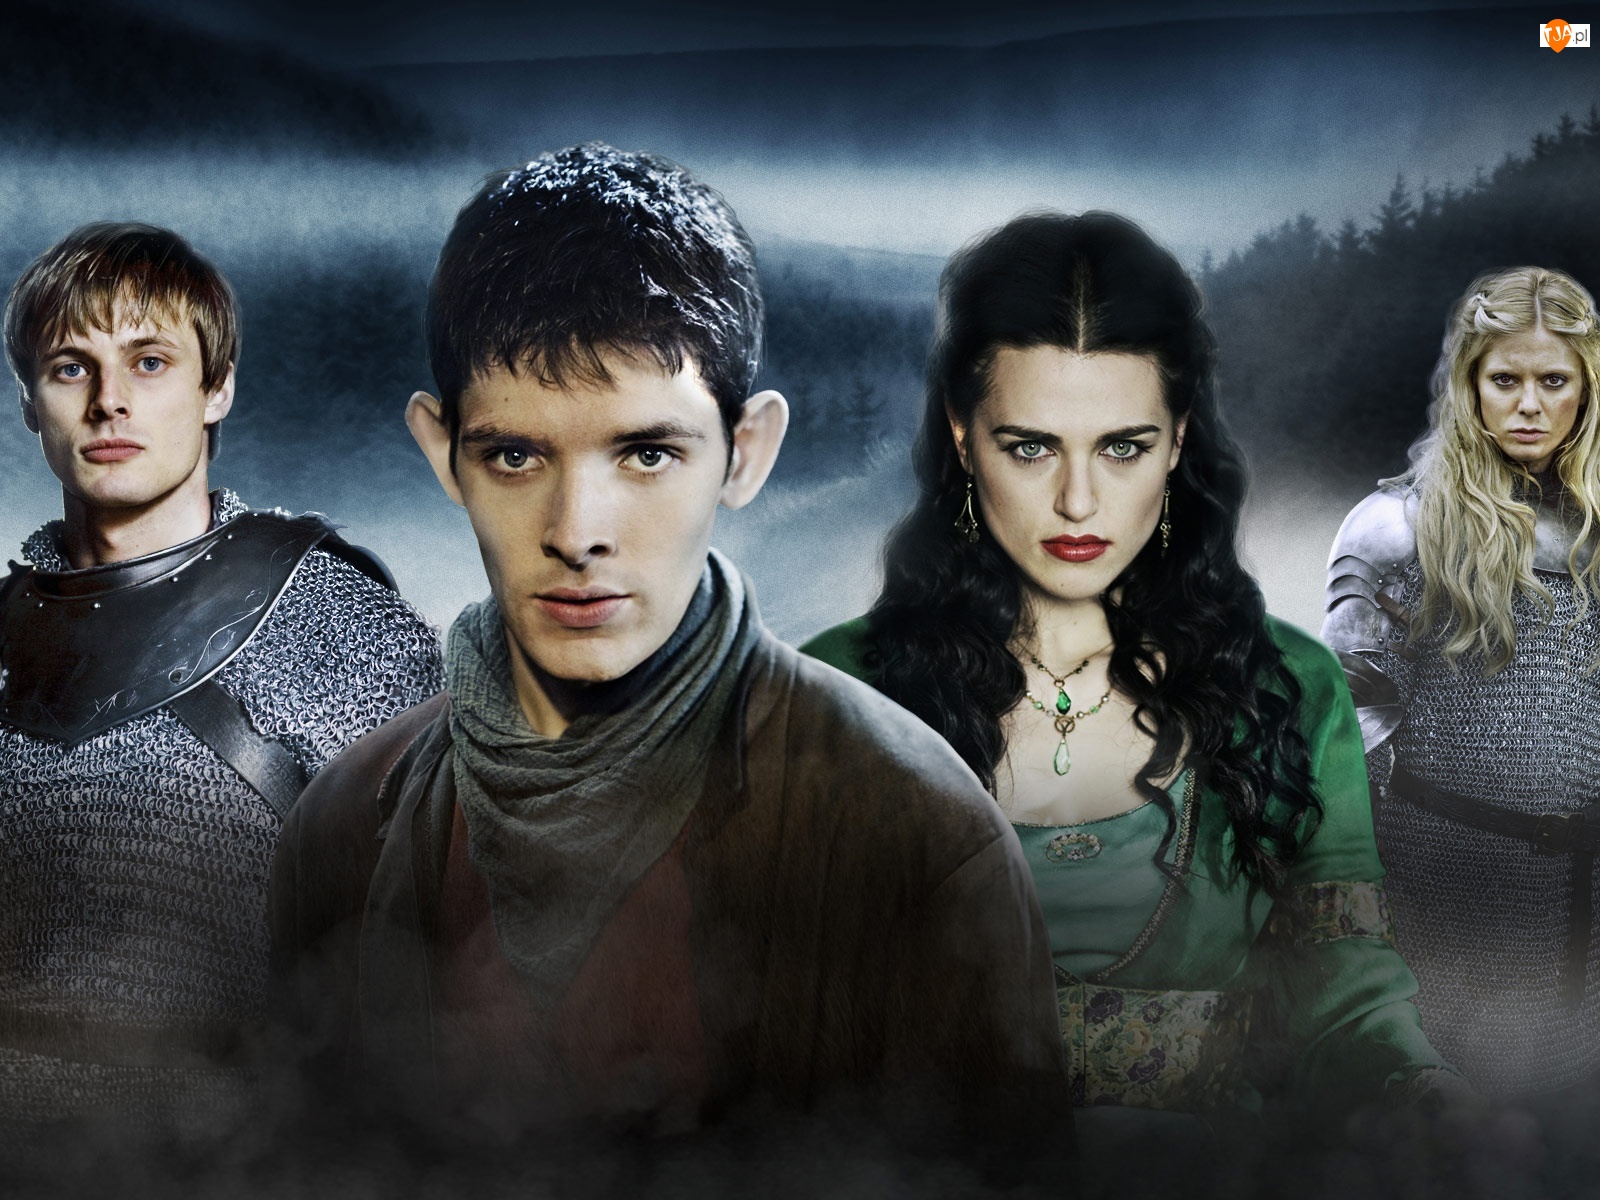 The Adventures of Merlin, Przygody Merlina, Morgana - Katie McGrath, Morgose - Emilia Fox, Merlin - Colin Morgan, Arthur - Bradley James